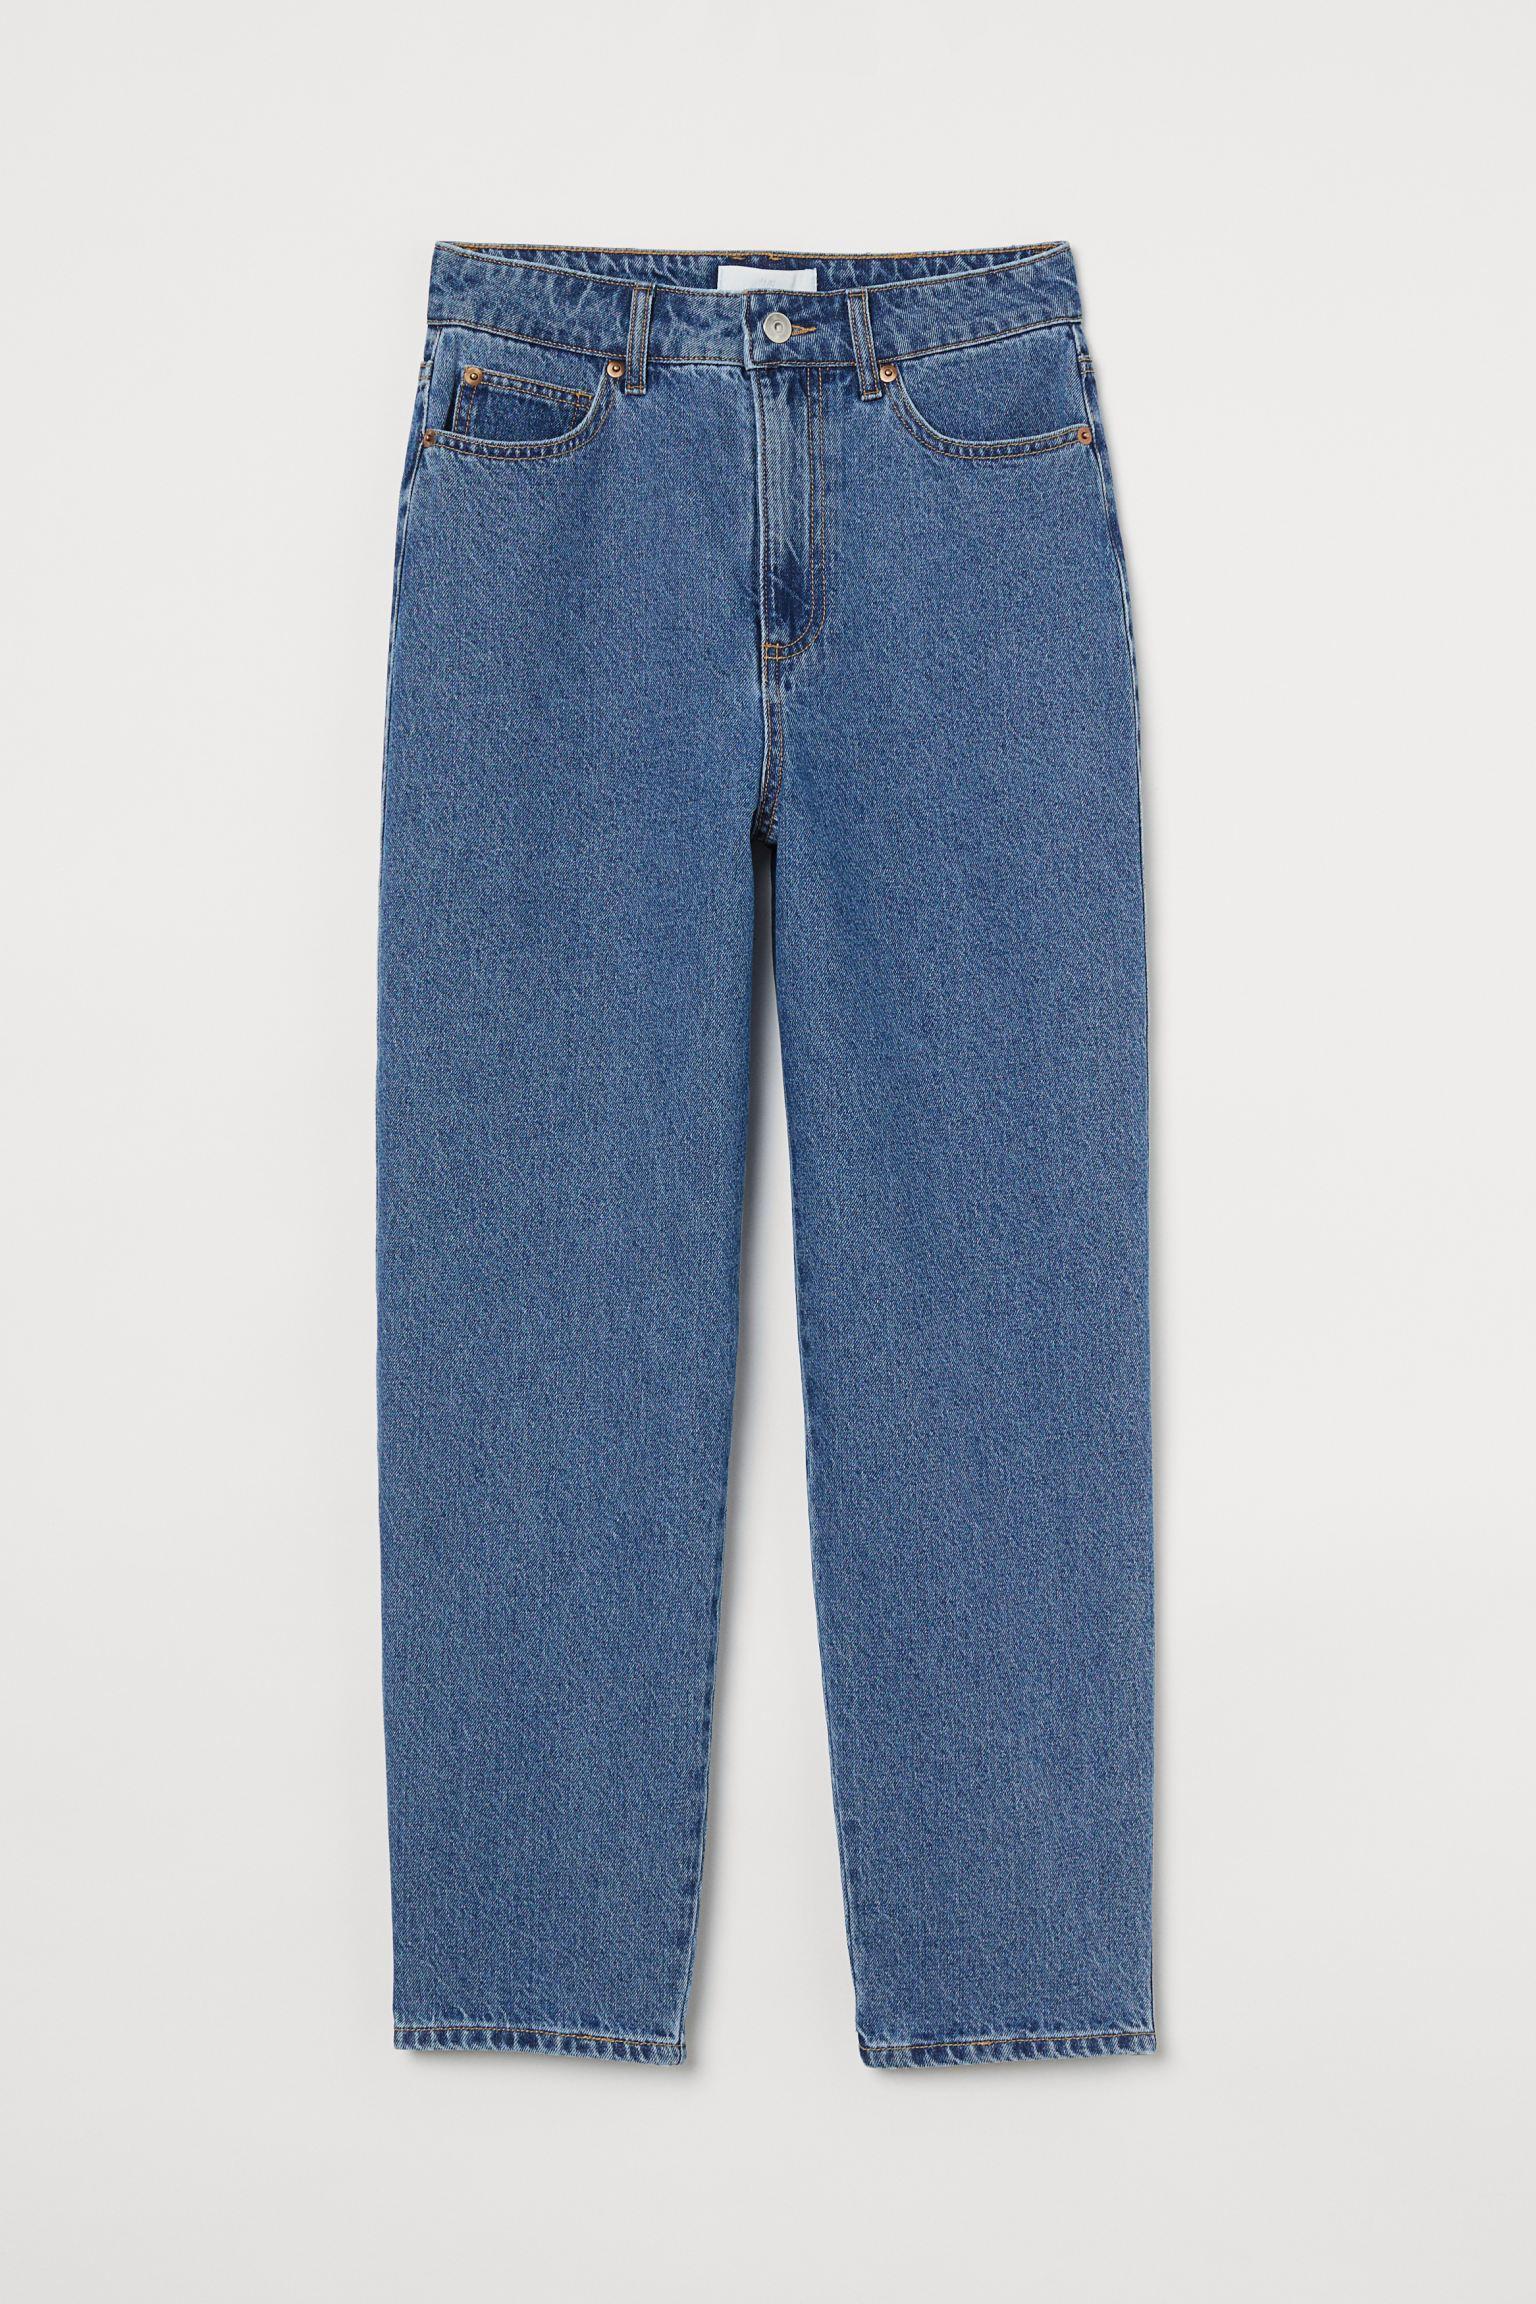 Отзыв на Высокий джинсы длиной по щиколотку из Интернет-Магазина H&M